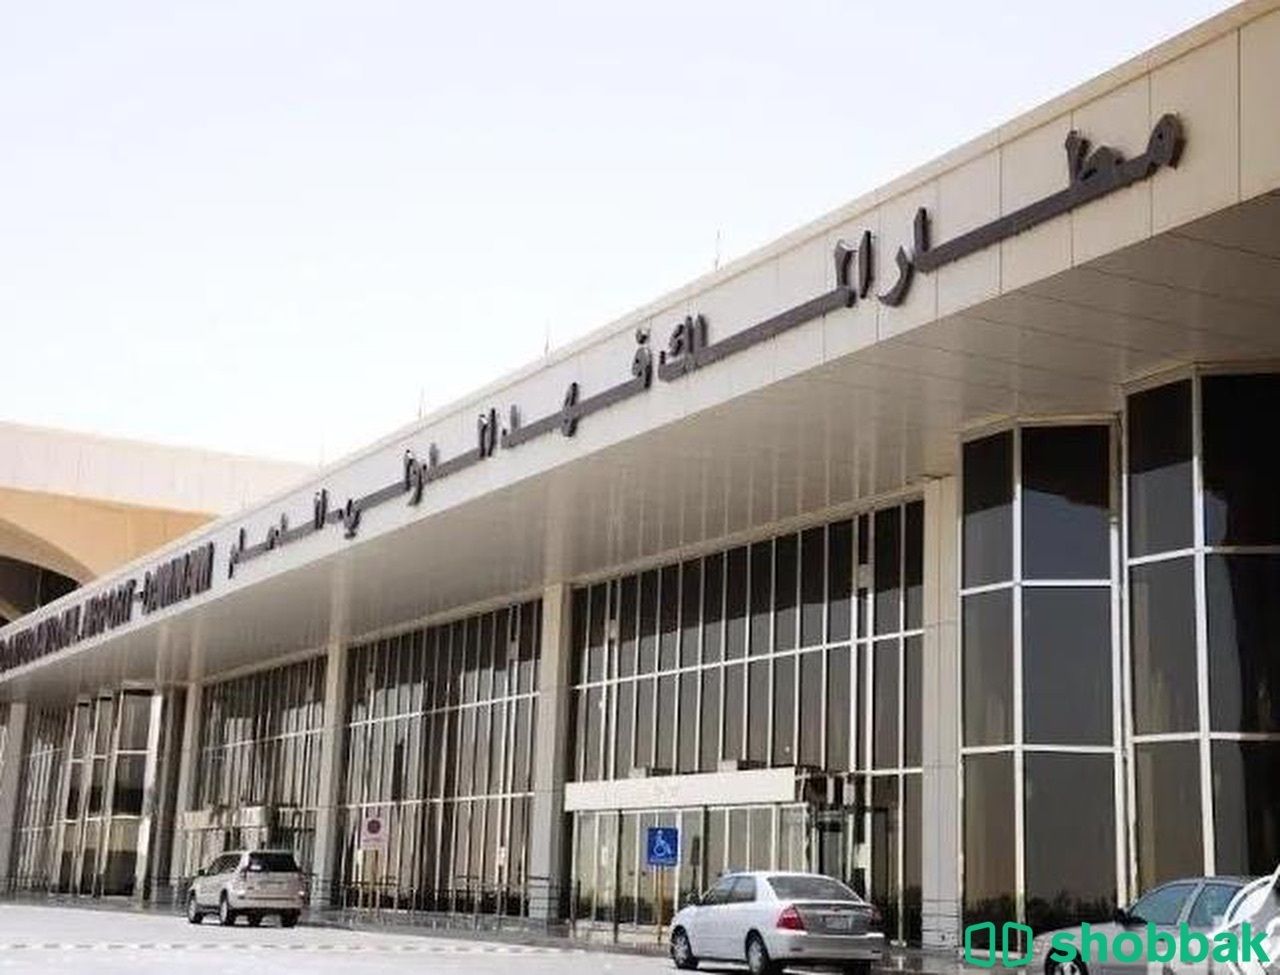 توصيل واستقبال من مطار الدمام و توصيل الى البحرين Shobbak Saudi Arabia